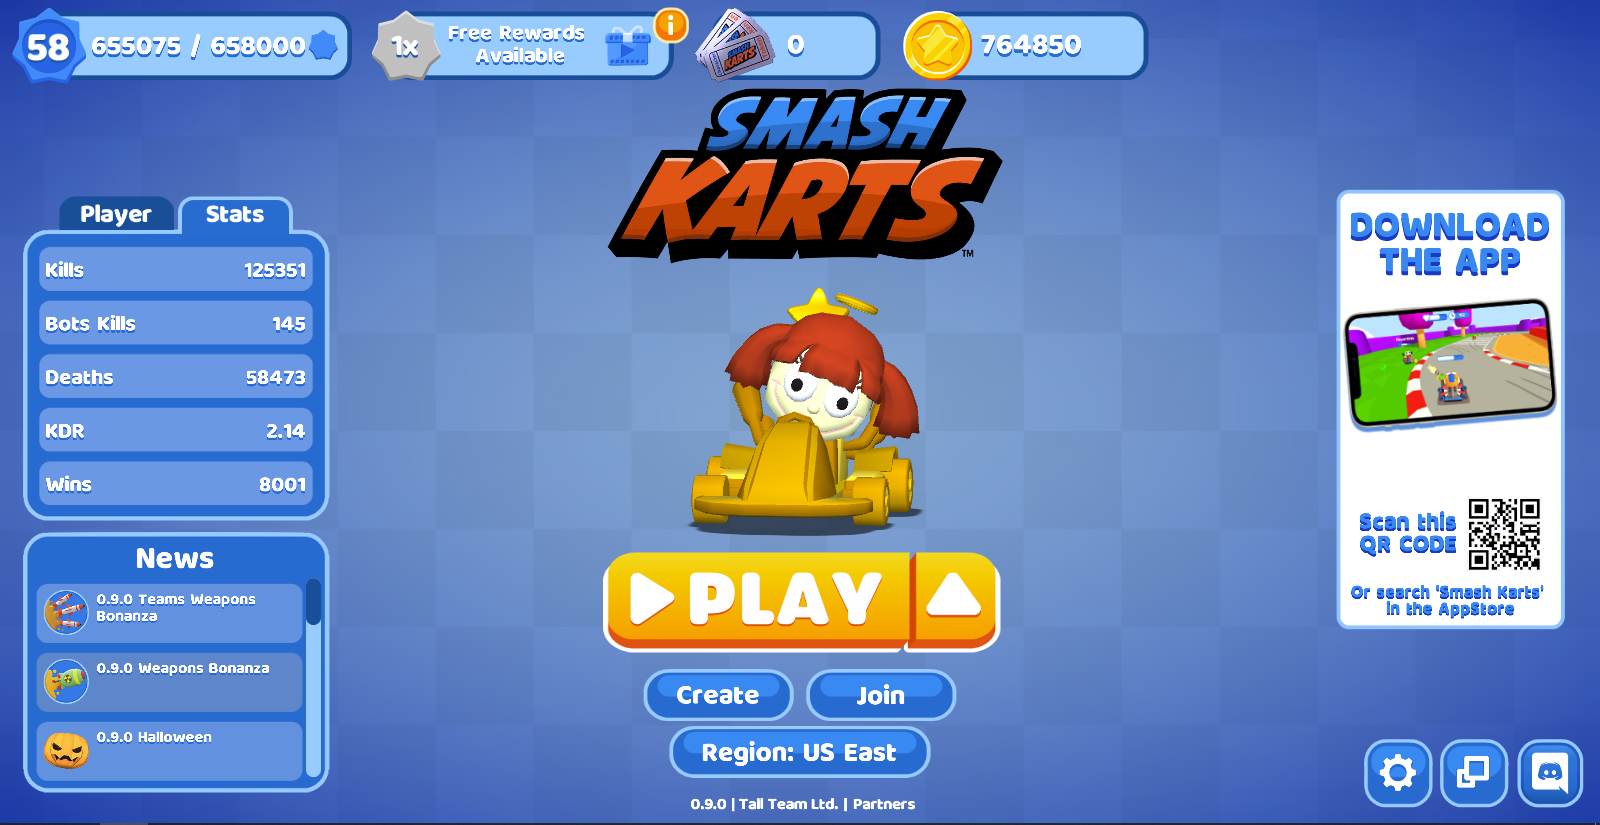 I got 500 wins in Smash Karts!!! 